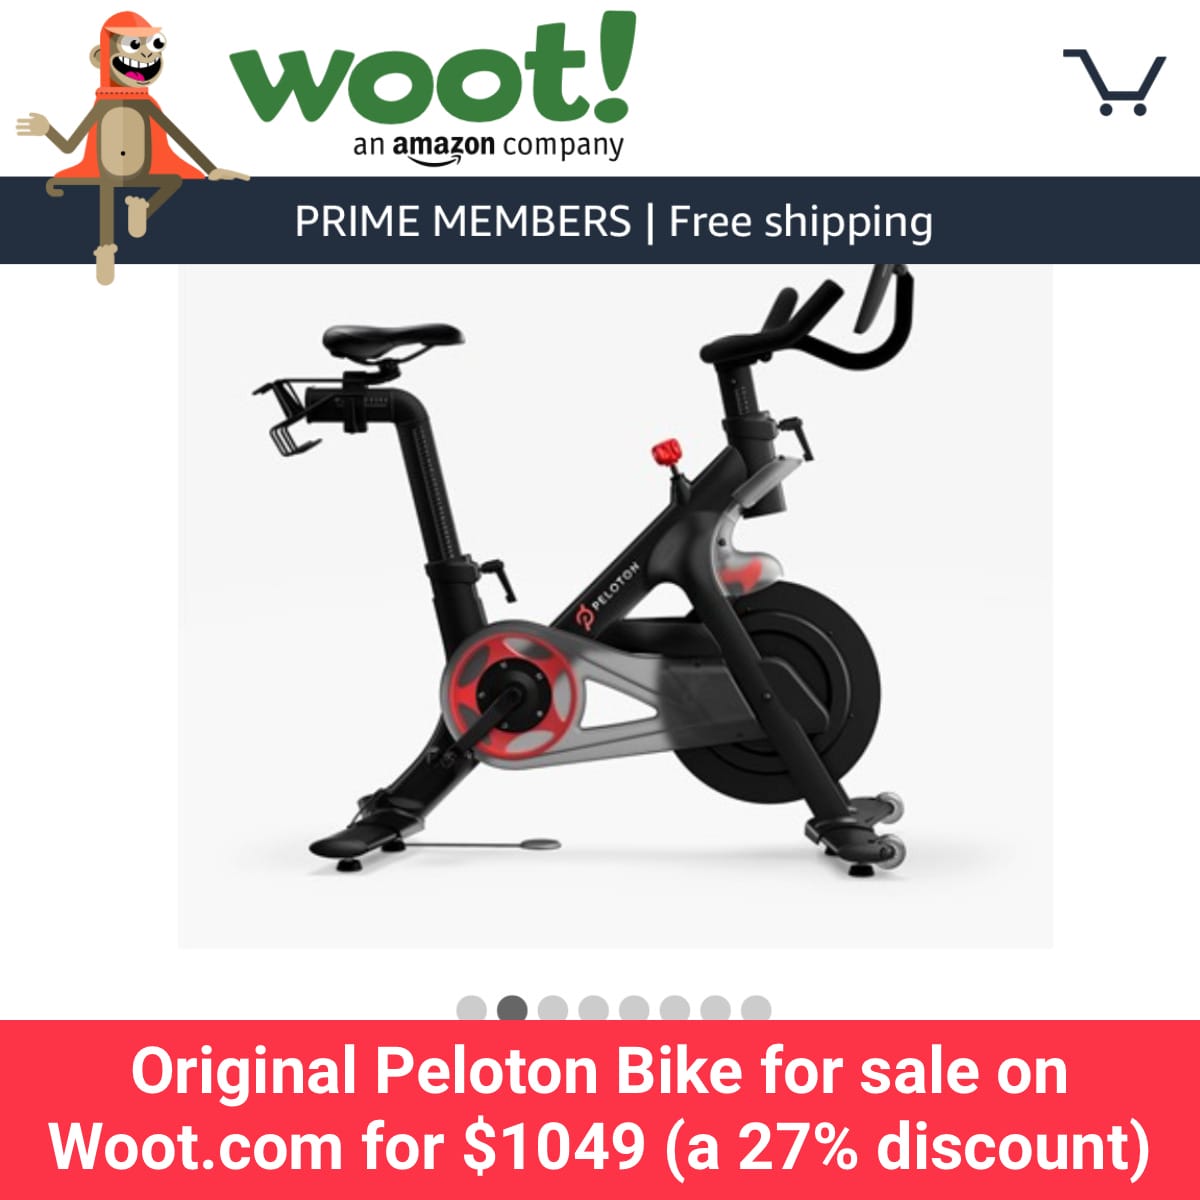 Original Peloton Bike for sale on Woot.com for $1049 (a 27% discount) -  Peloton Buddy